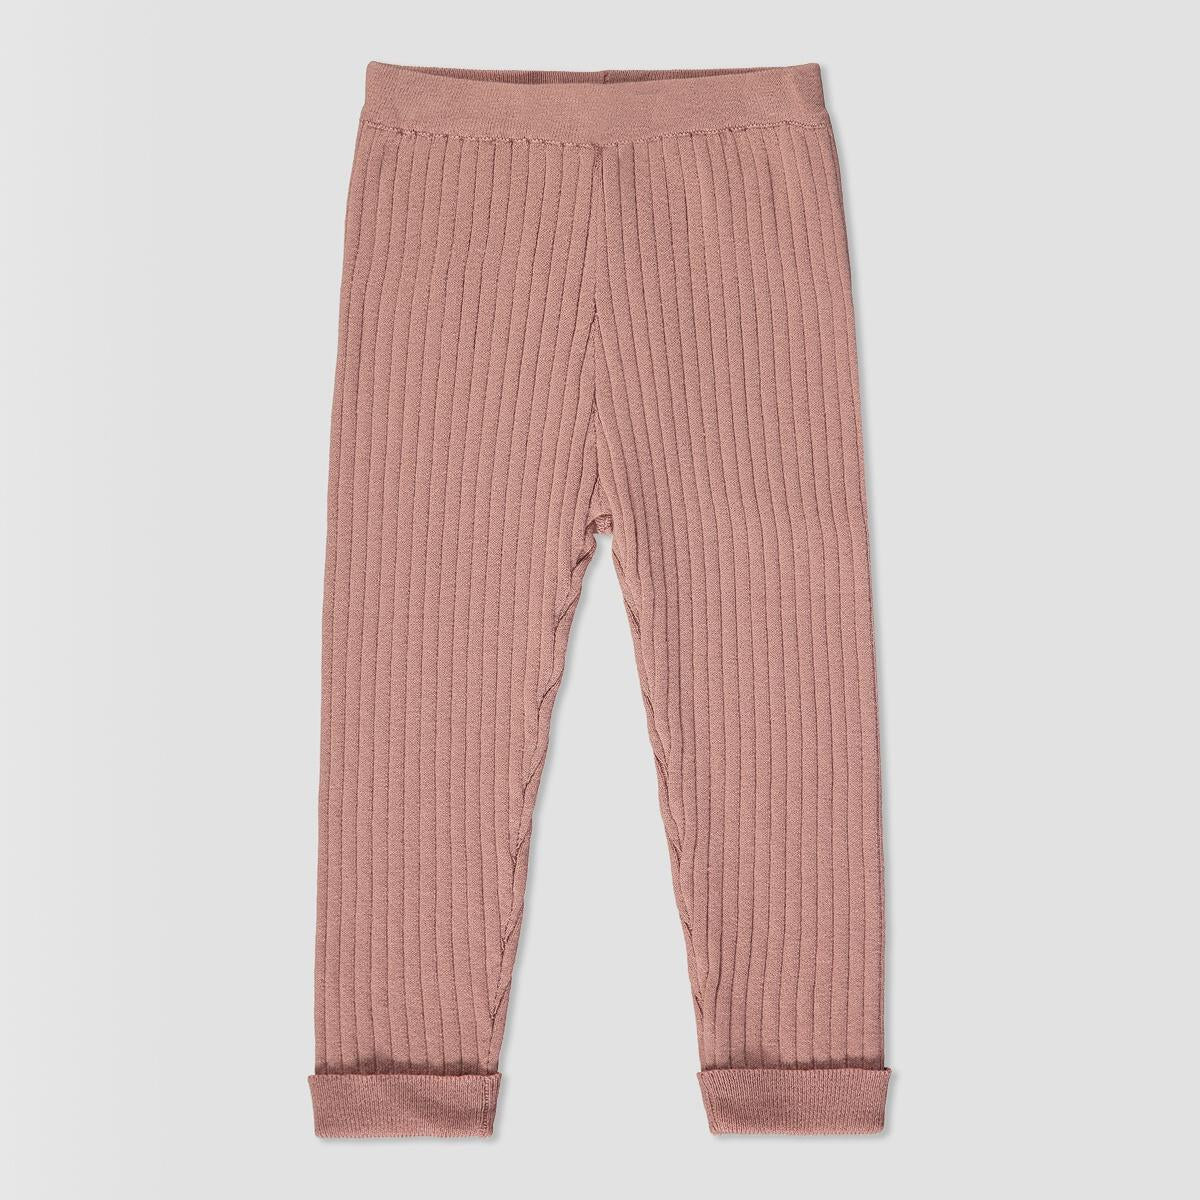 Toddler Knit Pants